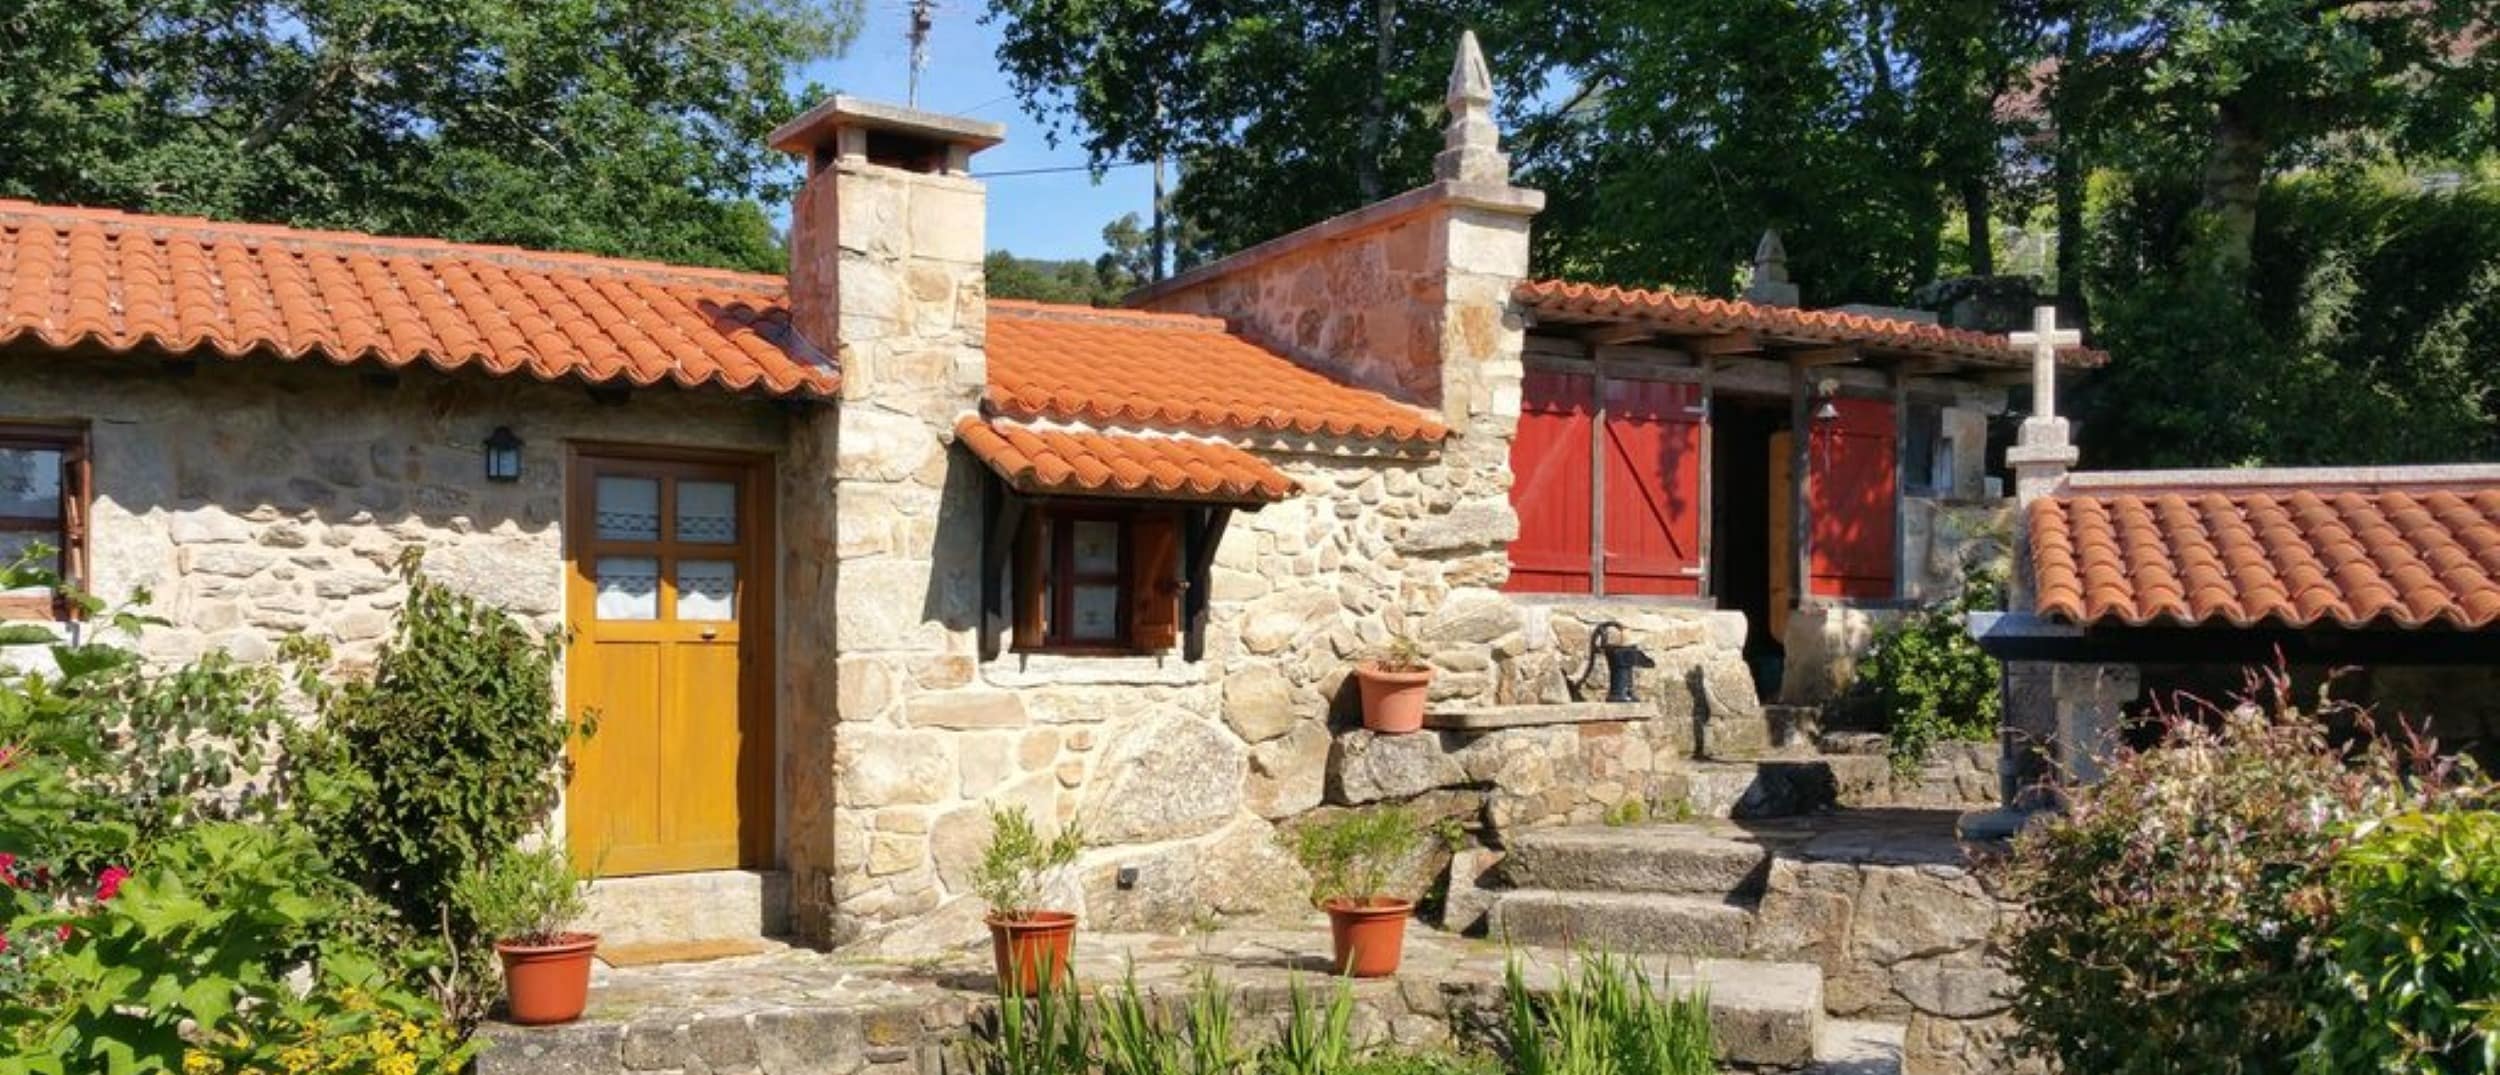 Seis destinos para alquilar una casa rural en Pontevedra